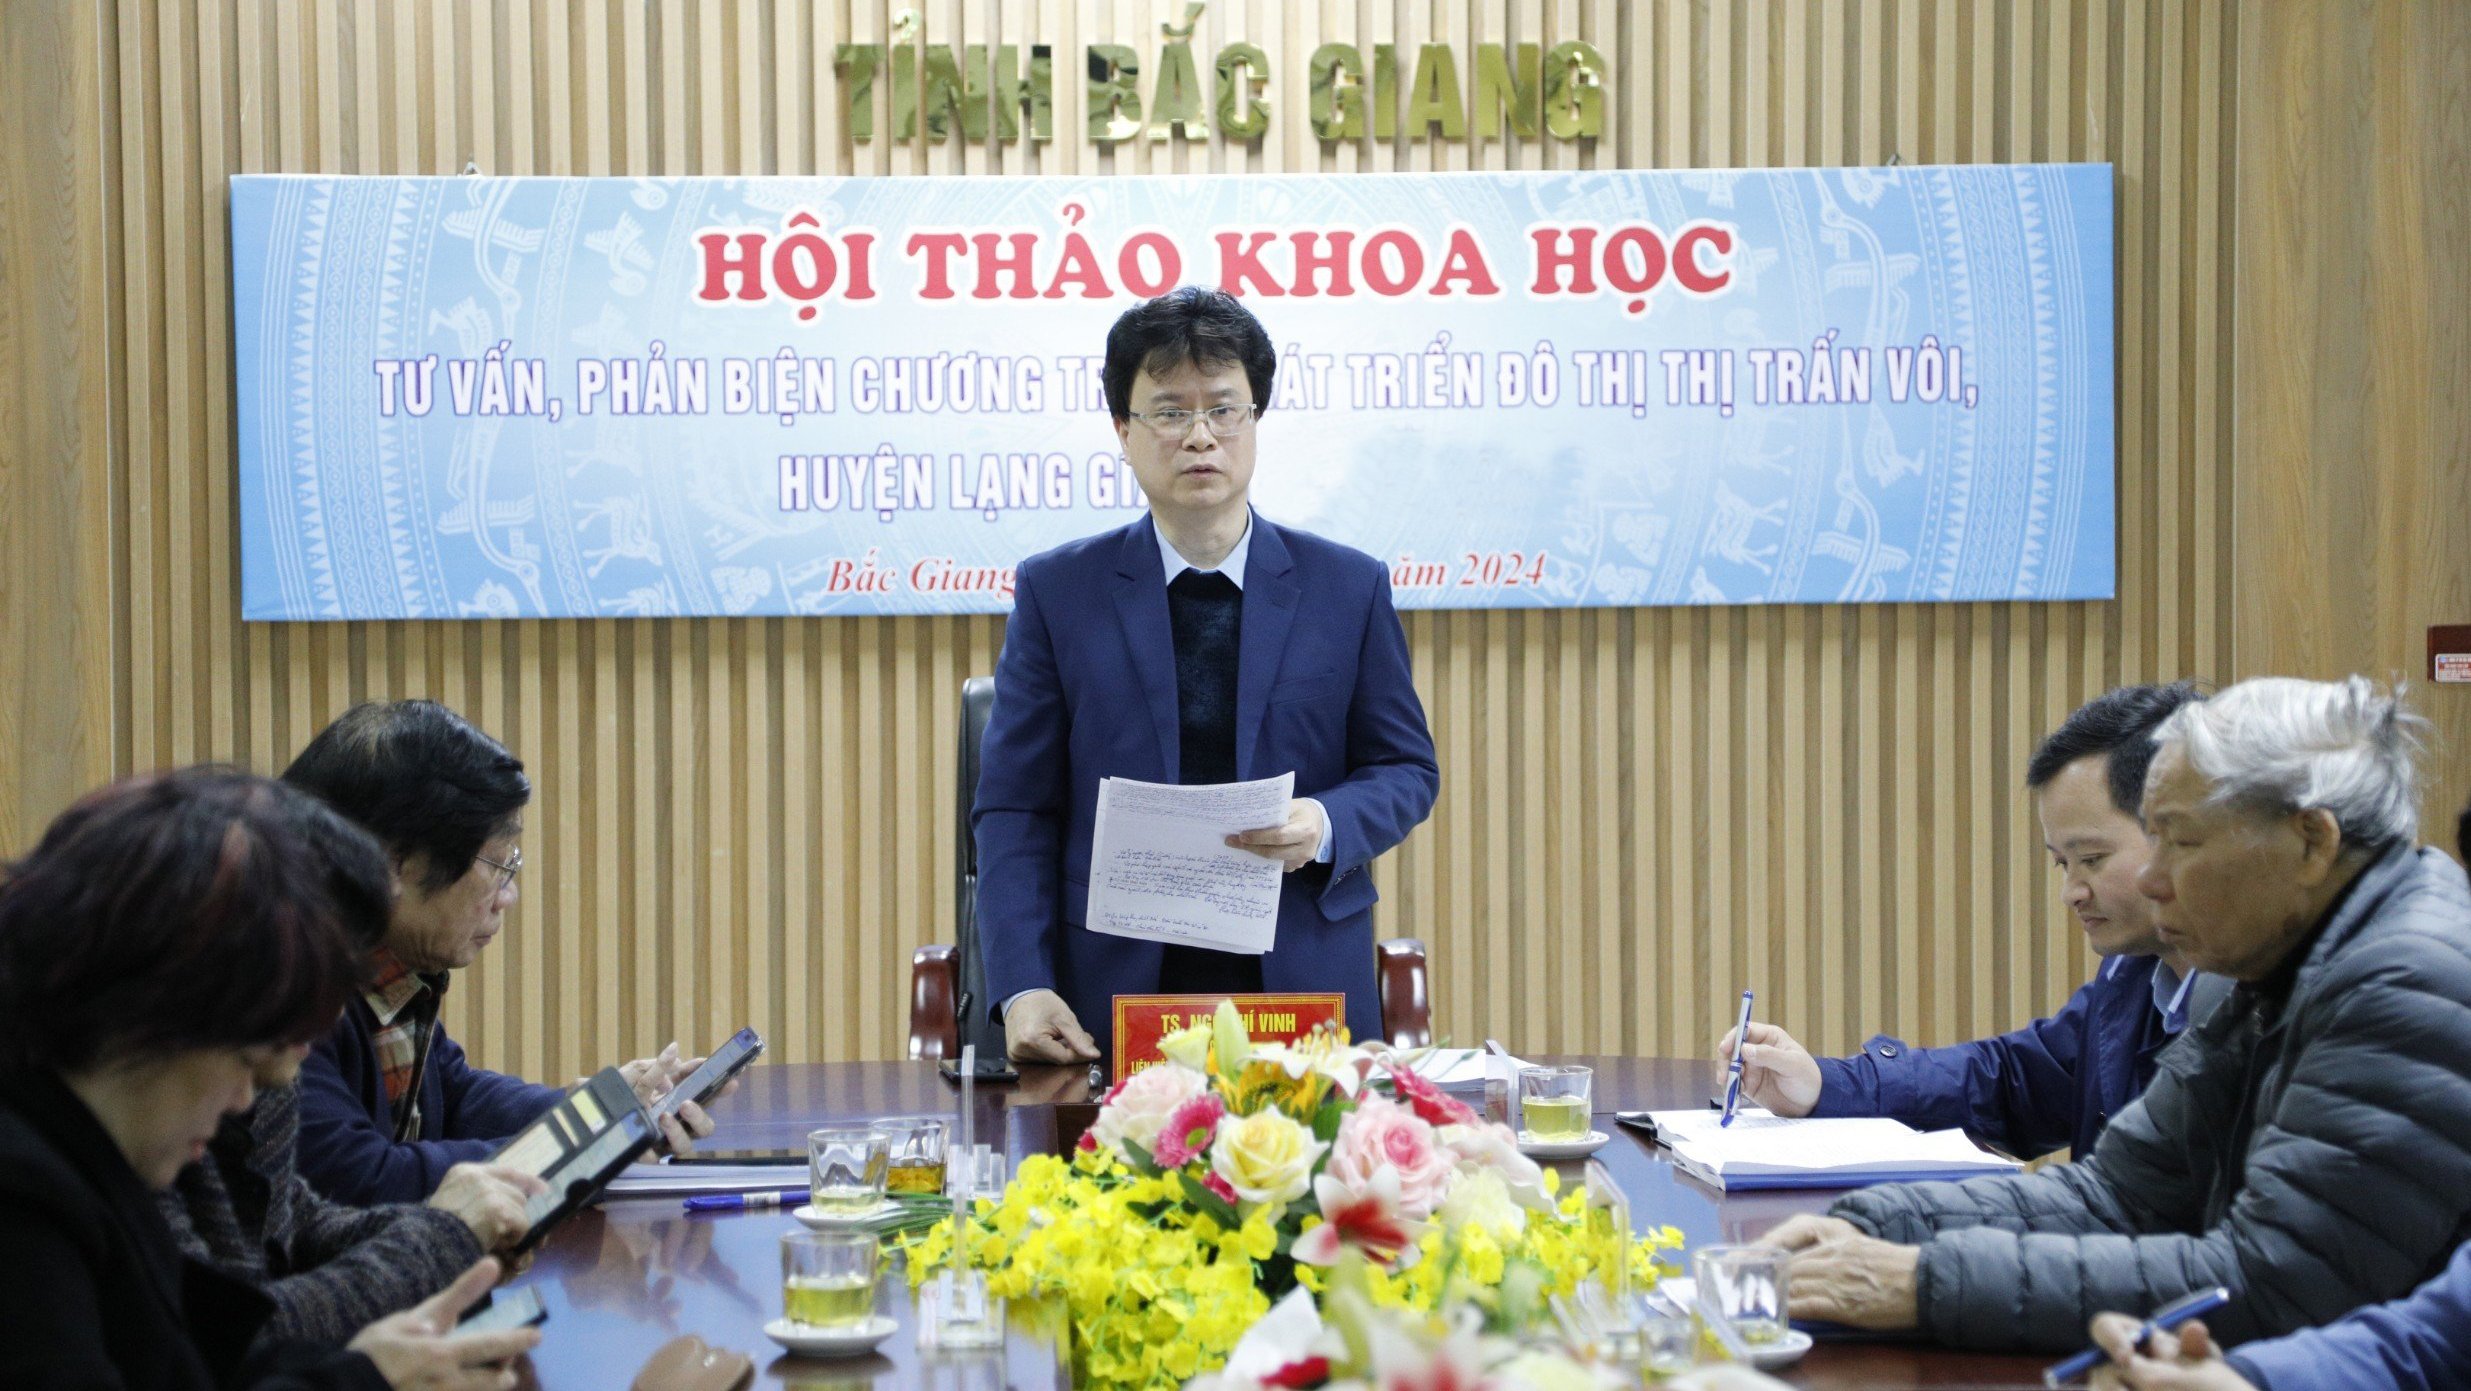 Tư vấn, phản biện chương trình phát triển đô thị thị trấn Vôi, huyện Lạng Giang đến năm 2035